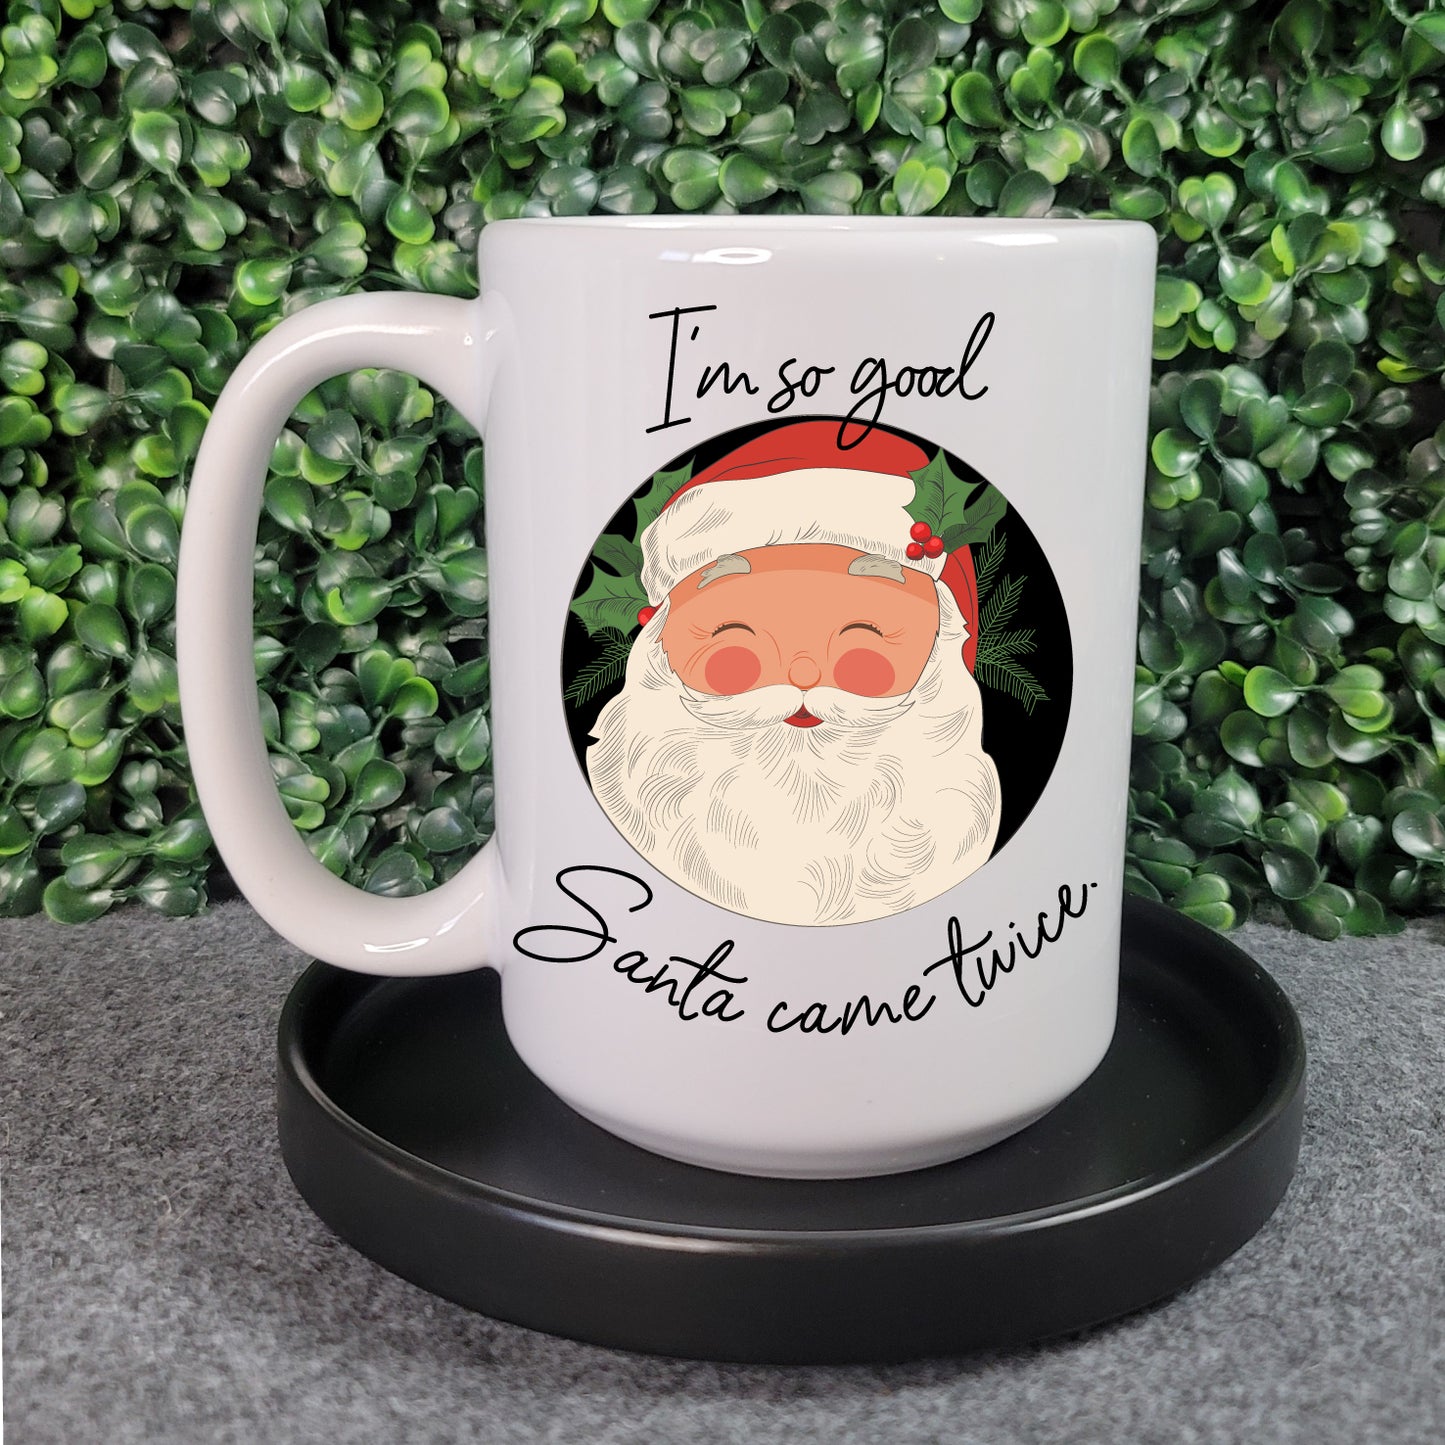 I'm So Good Santa Came Twice Mug